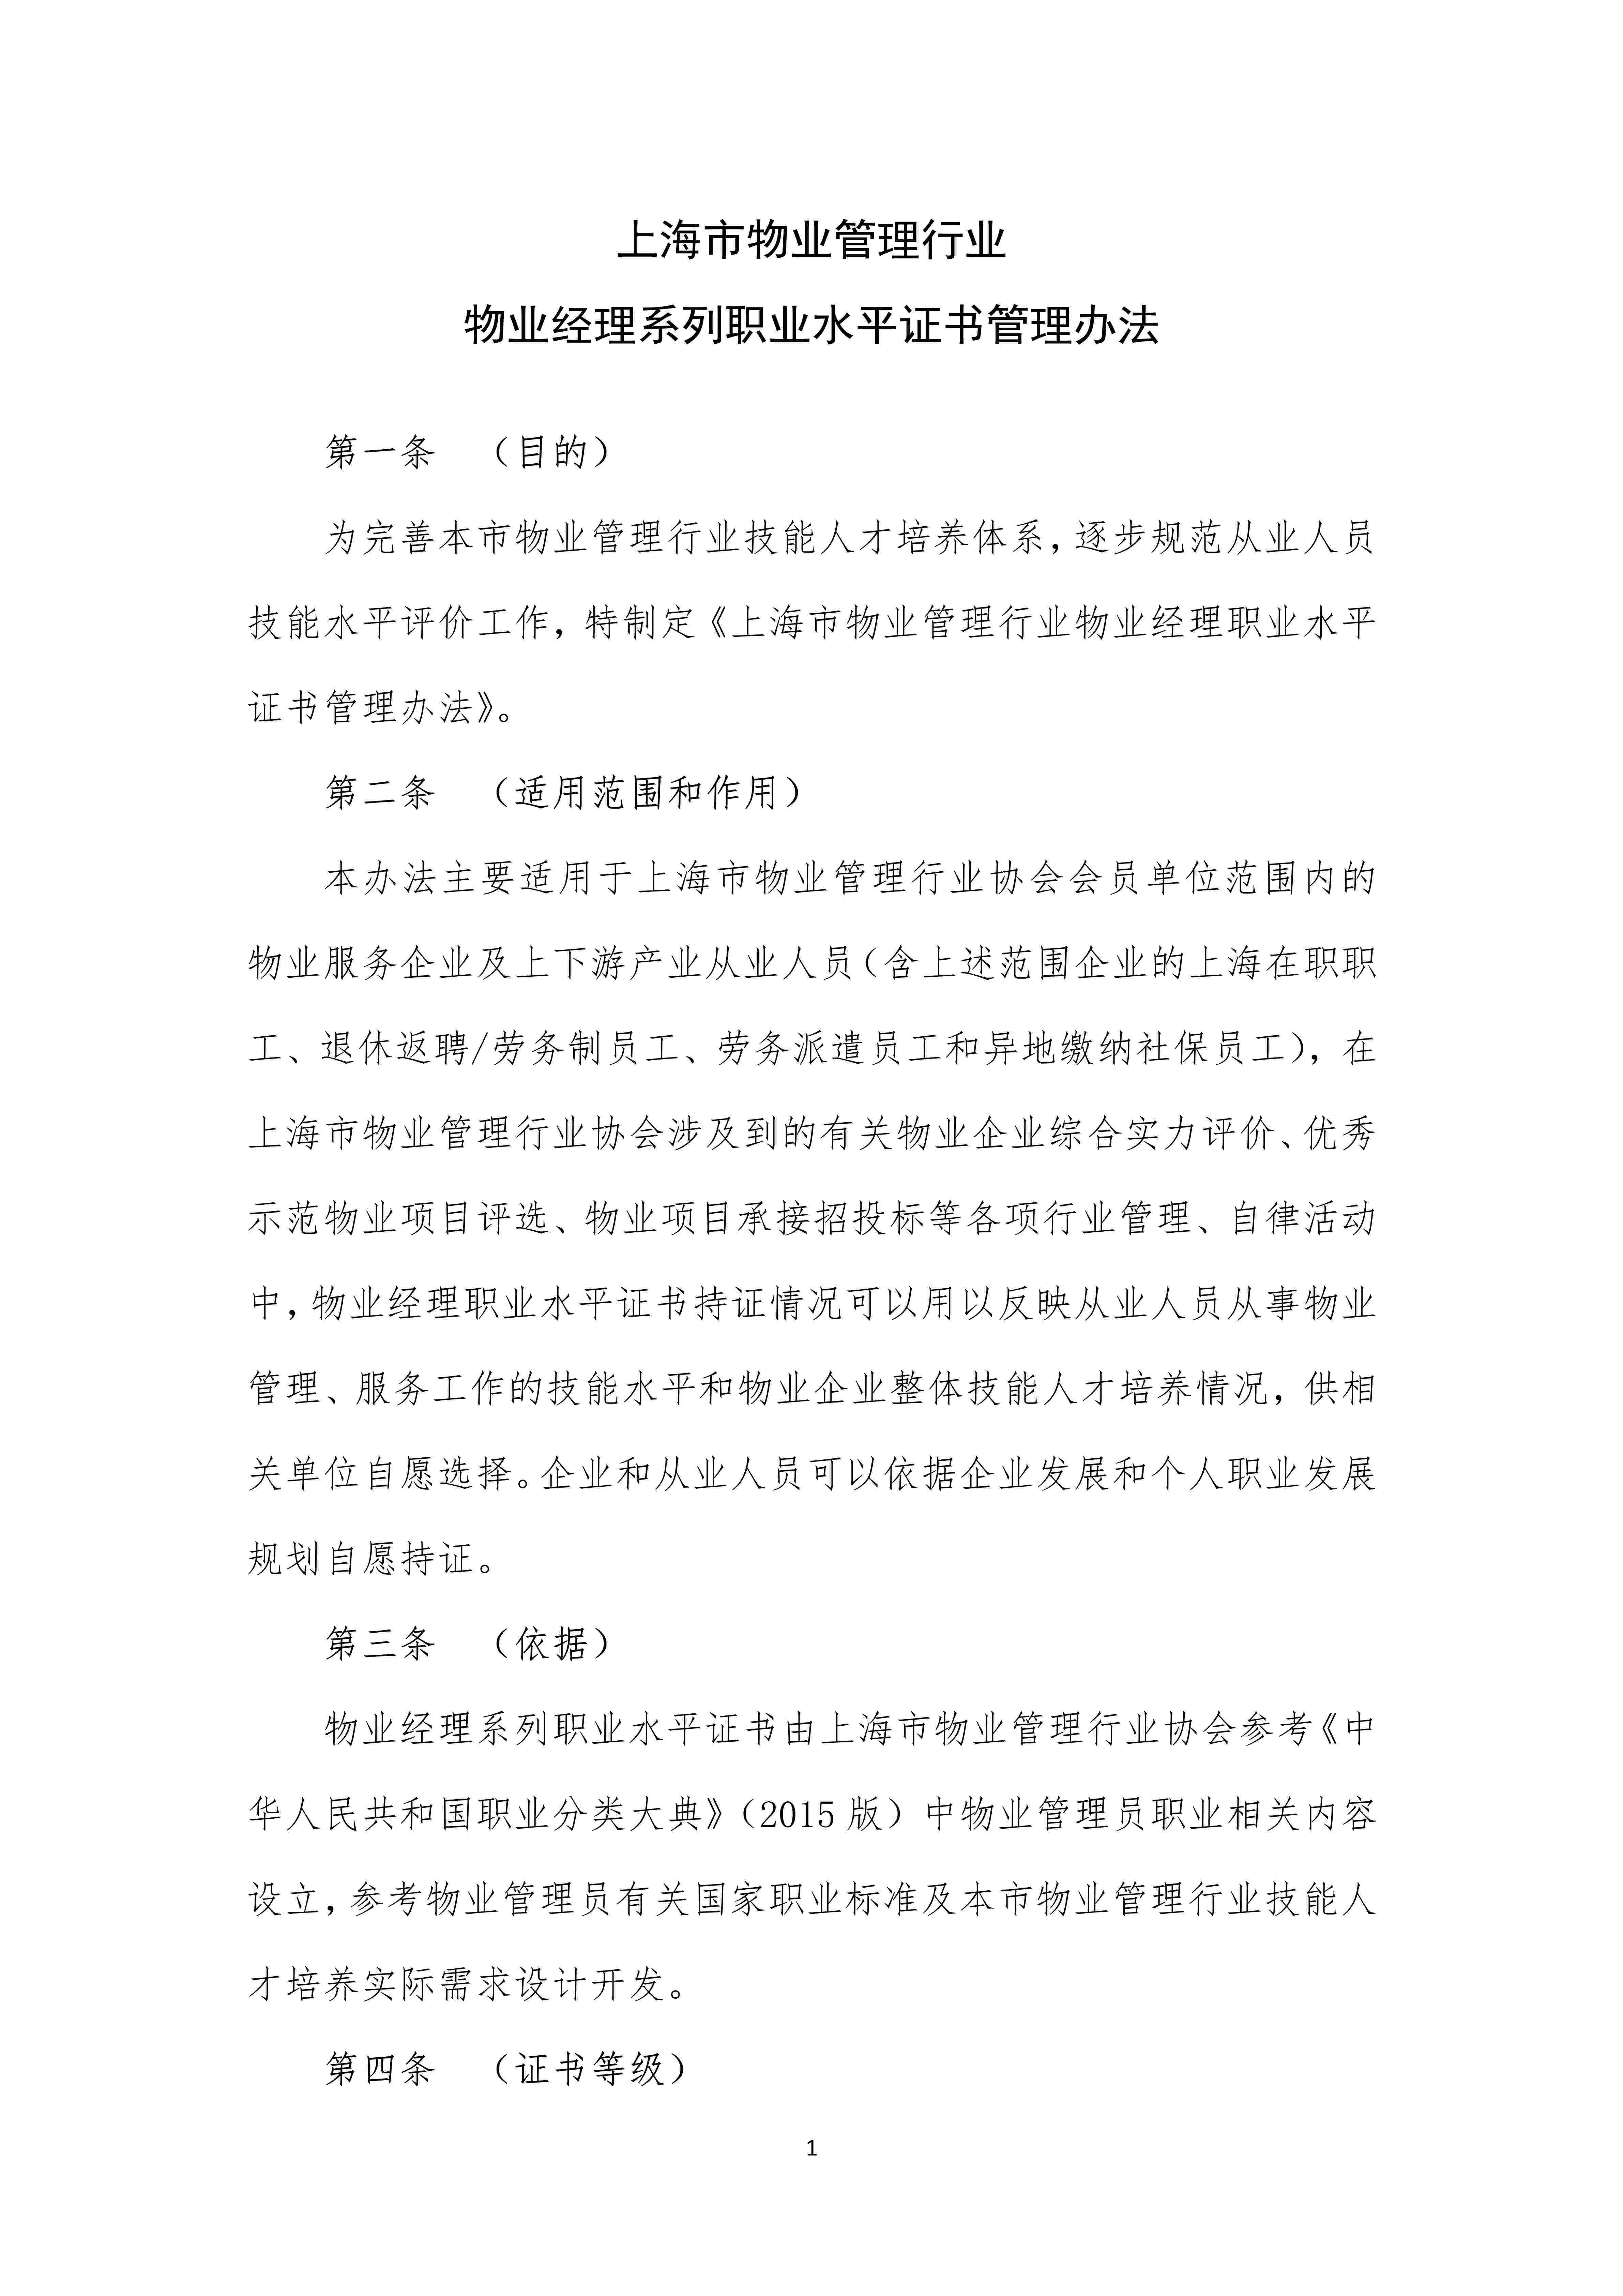 上海市物业管理行业物业经理系列职业水平证书管理办法（定稿）_1.jpg-2022-07-06-09-56-33-987.jpg